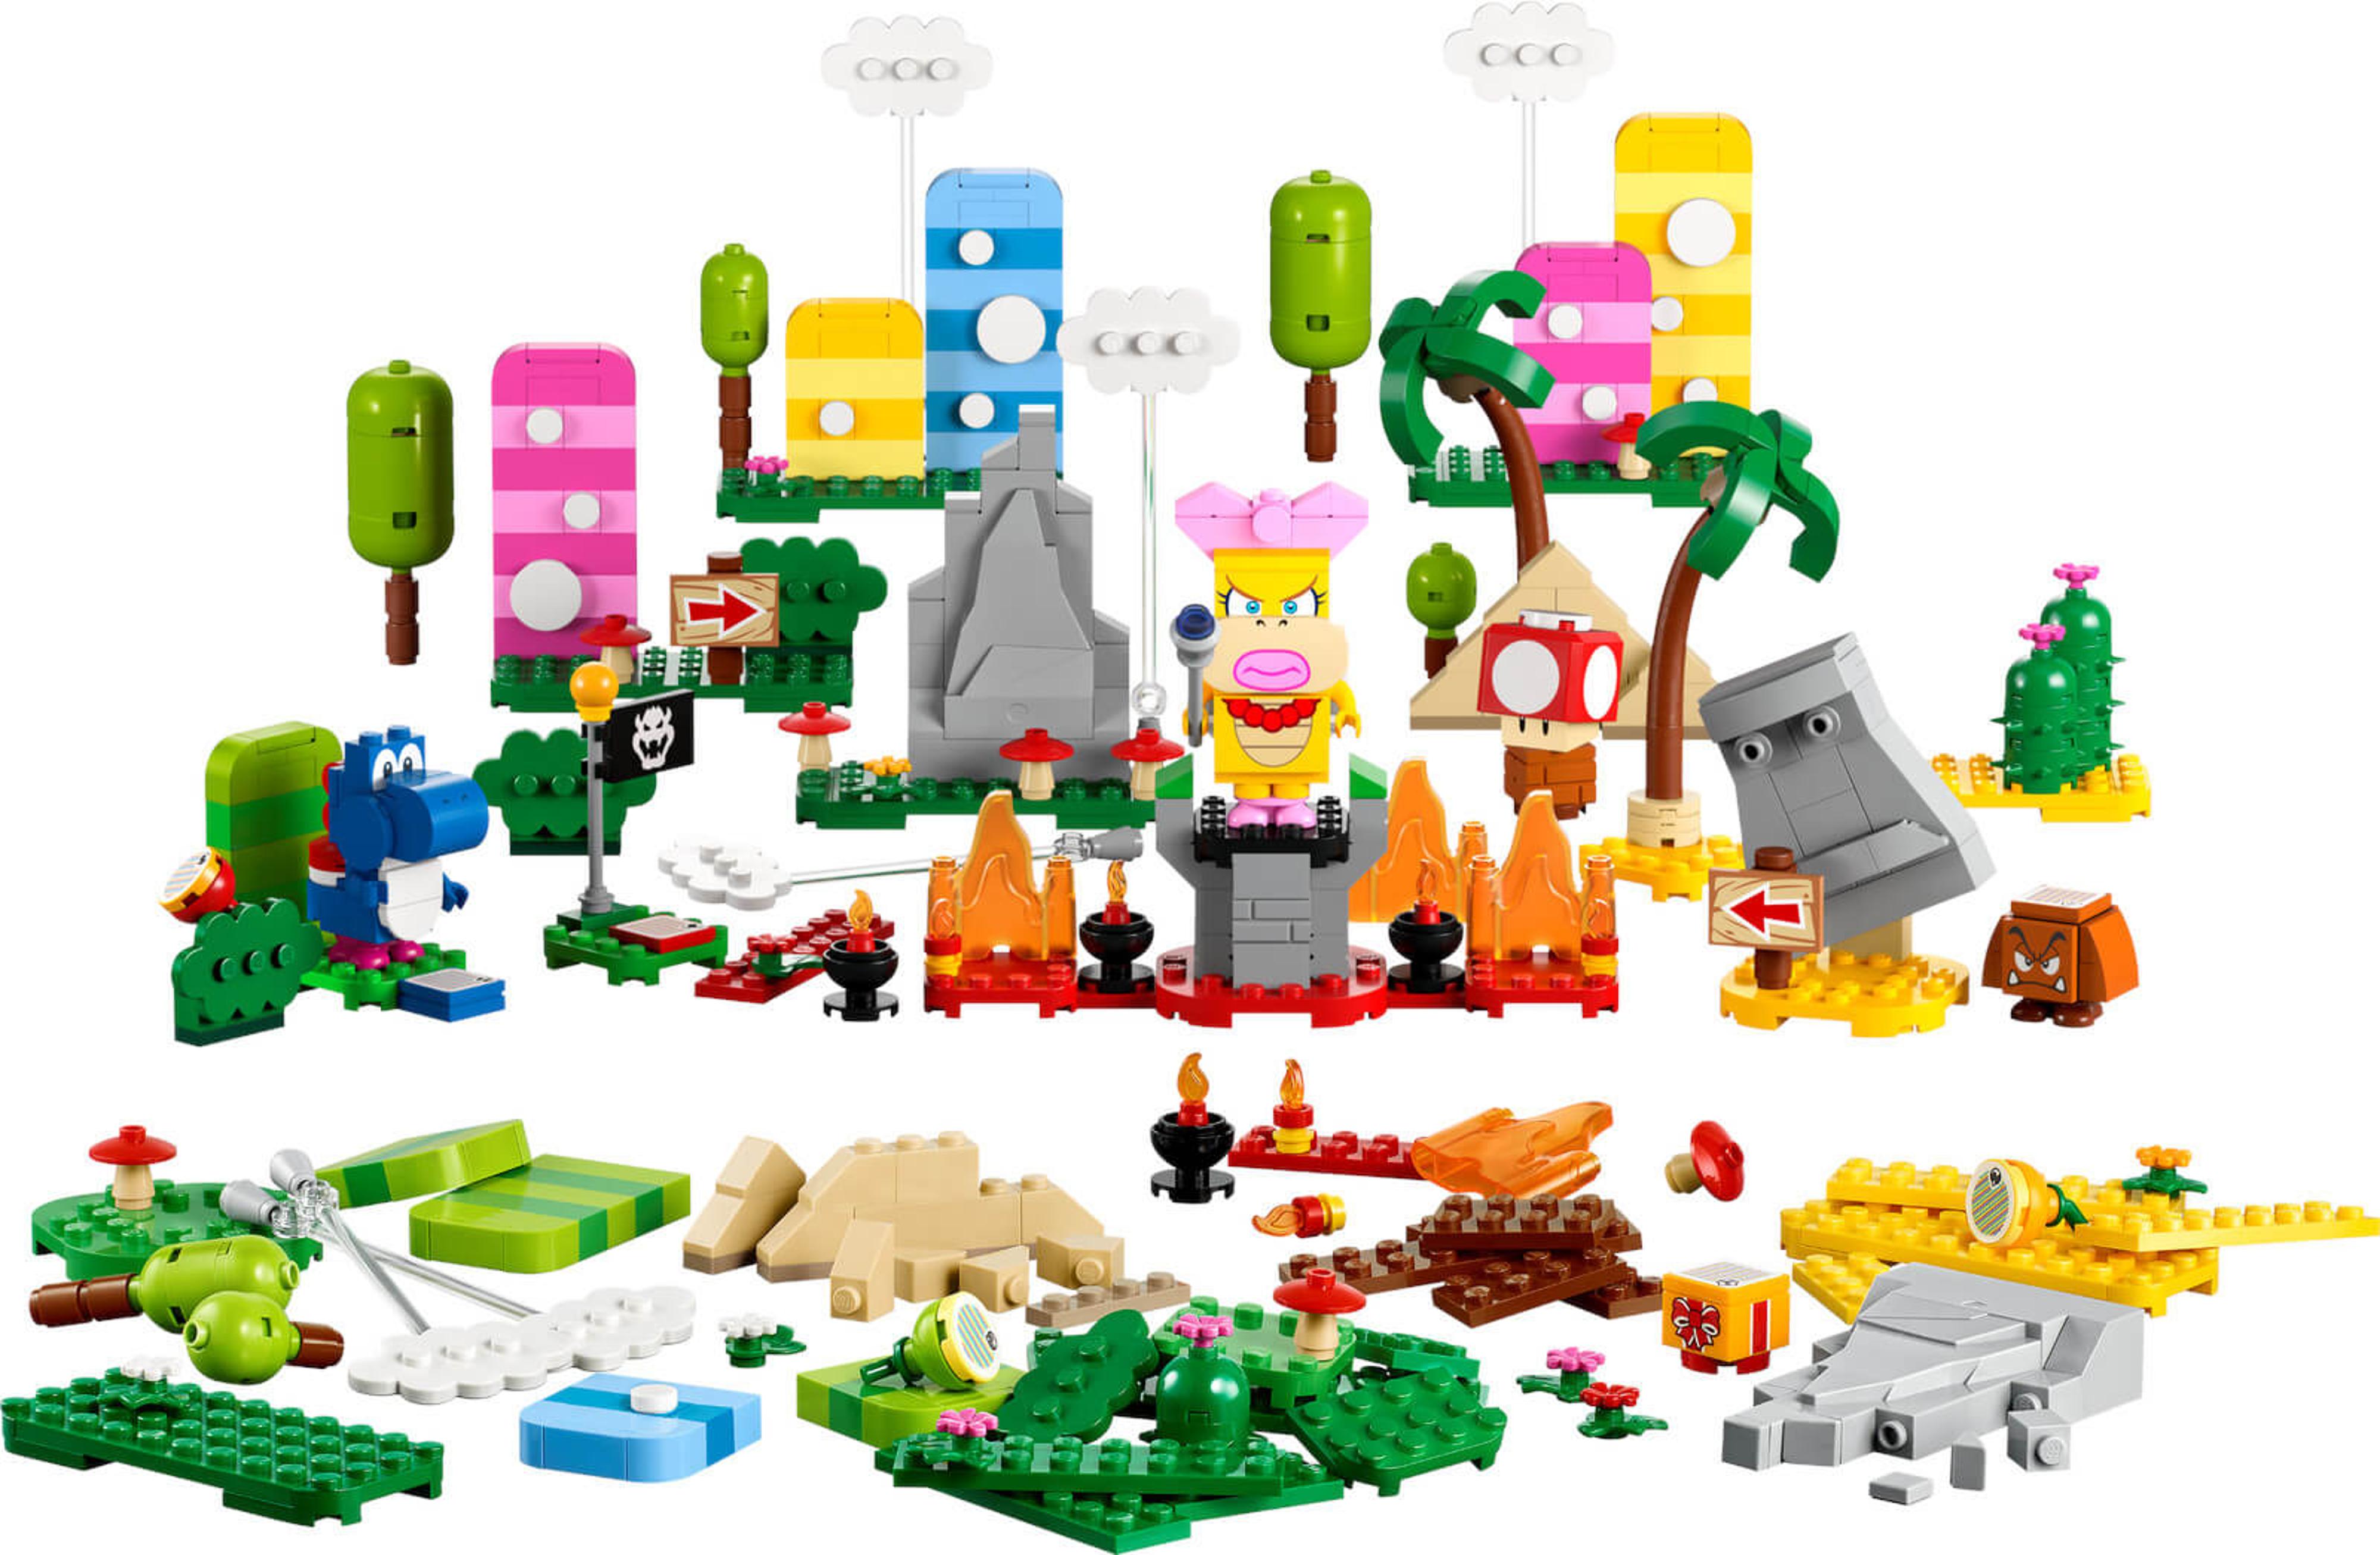 LEGO Super Mario - Creativity Toolbox Maker Set